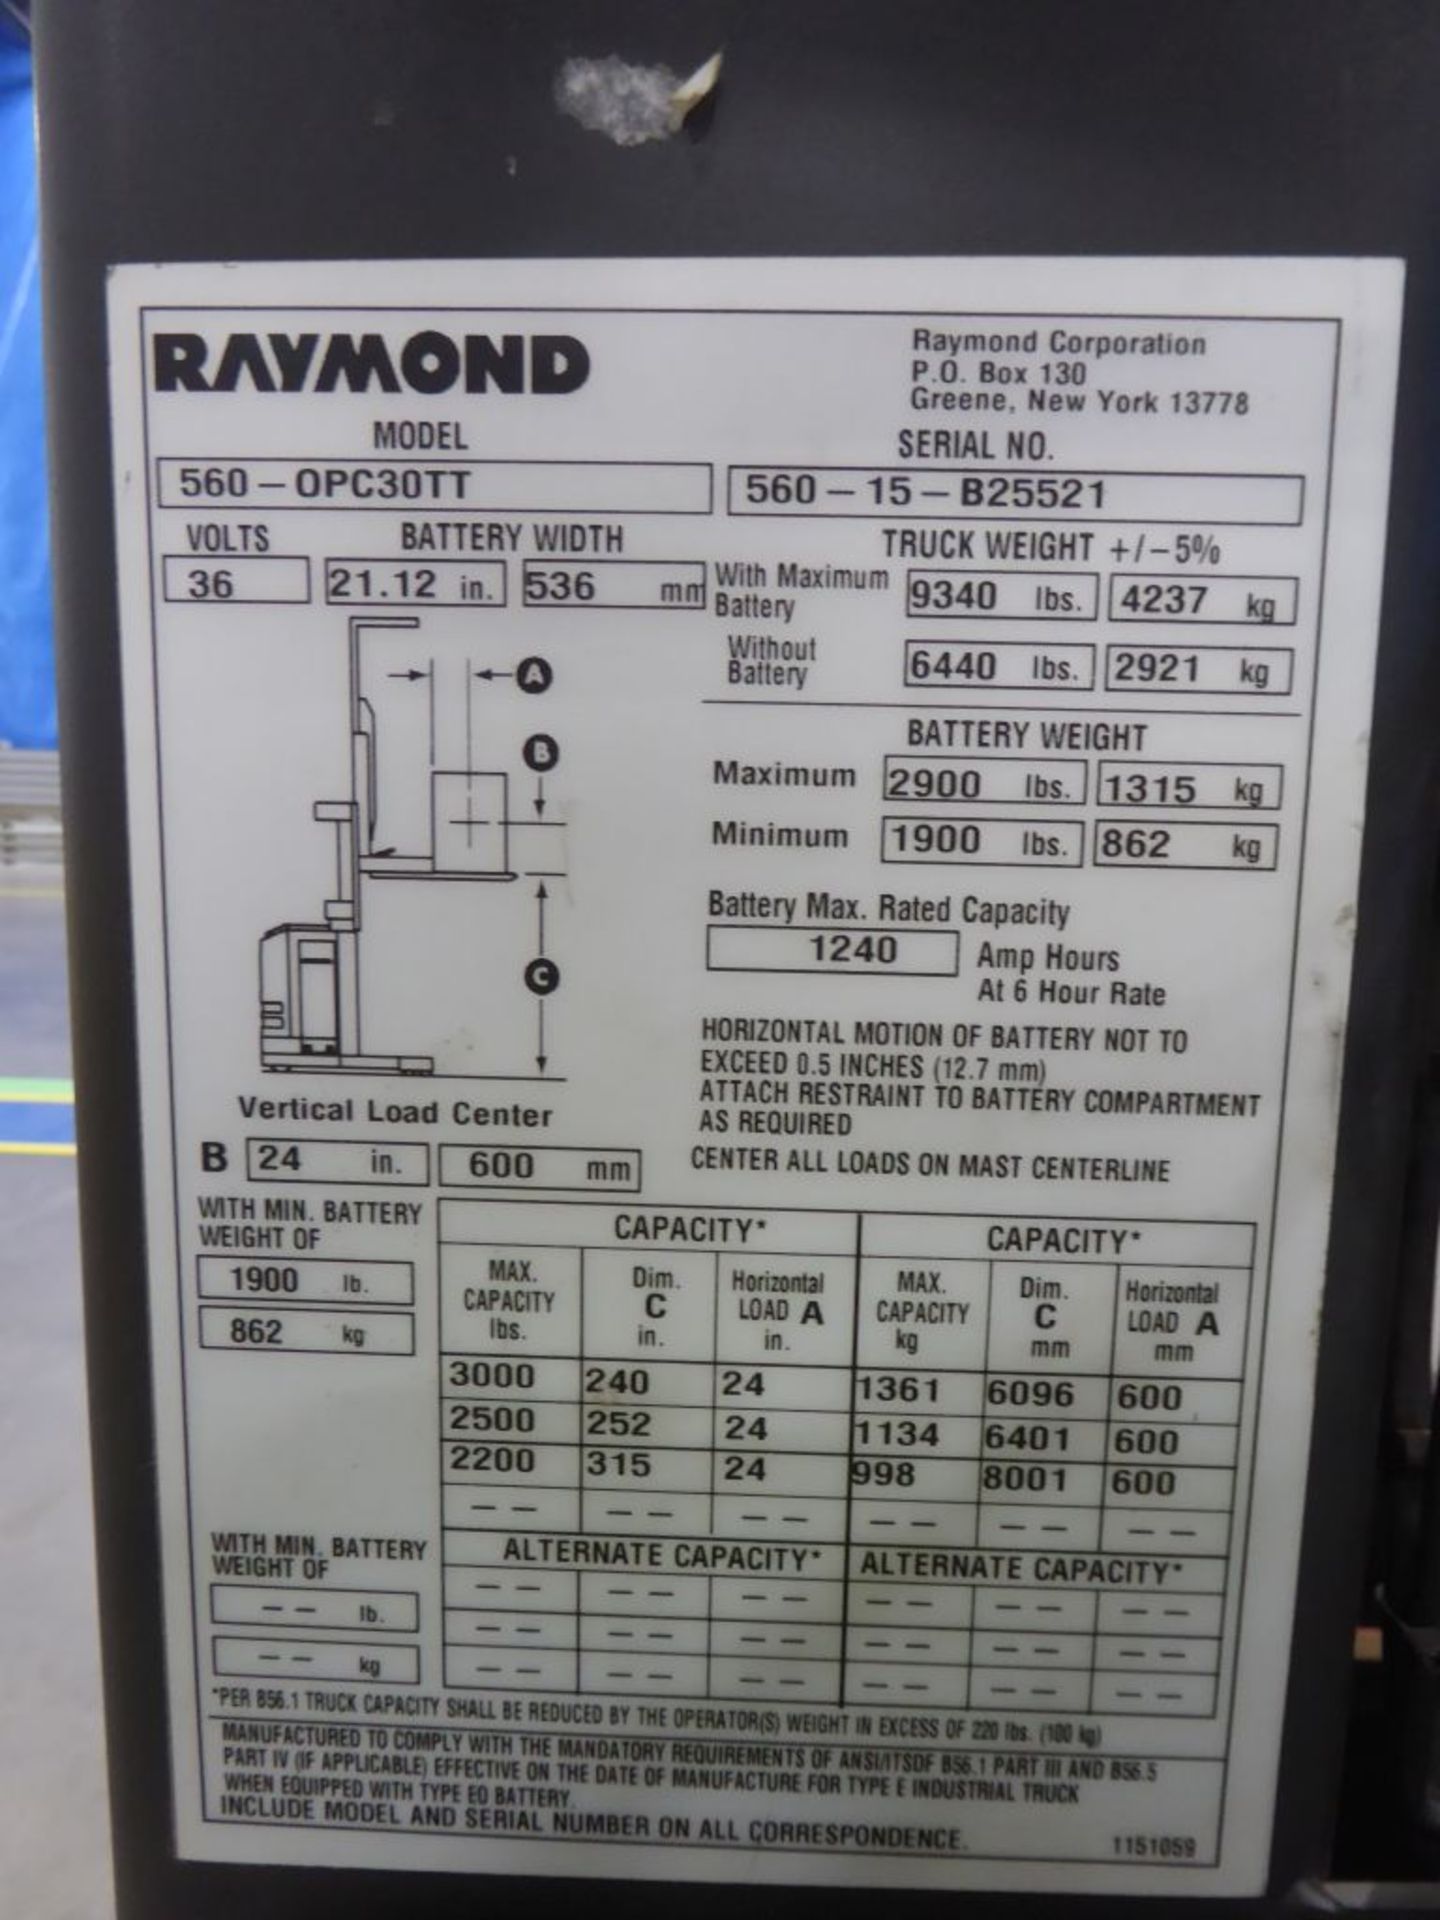 Raymond 5600 Order Picker Forklift - Image 9 of 9